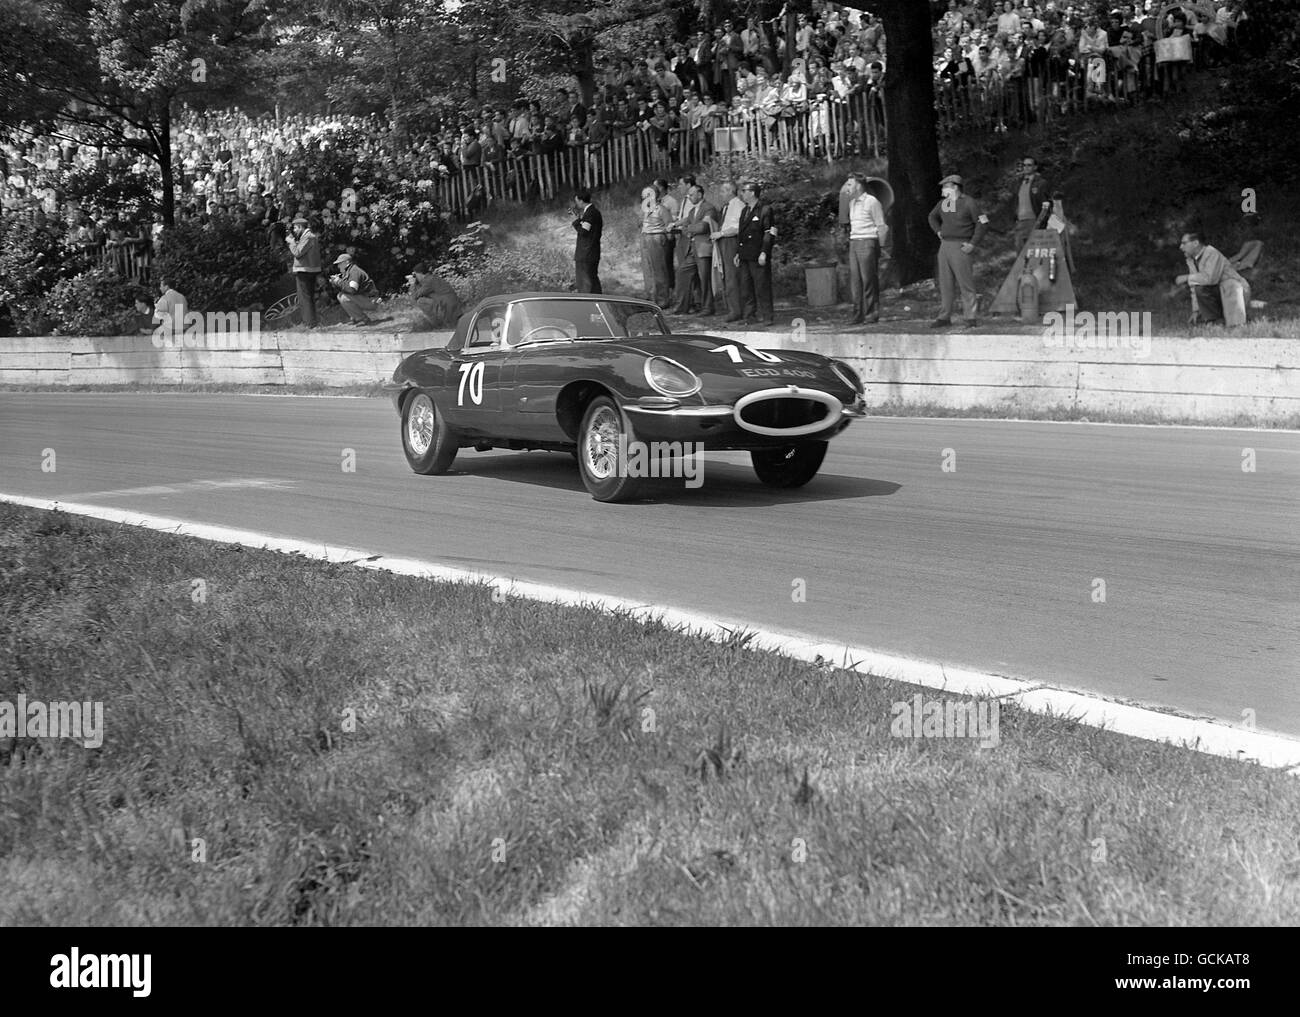 Courses automobiles - Norbury Trophy Race - Crystal Palace.Jack Sears, Jaguar E-Type, a terminé deuxième derrière la machine similaire de Roy Salvadori Banque D'Images